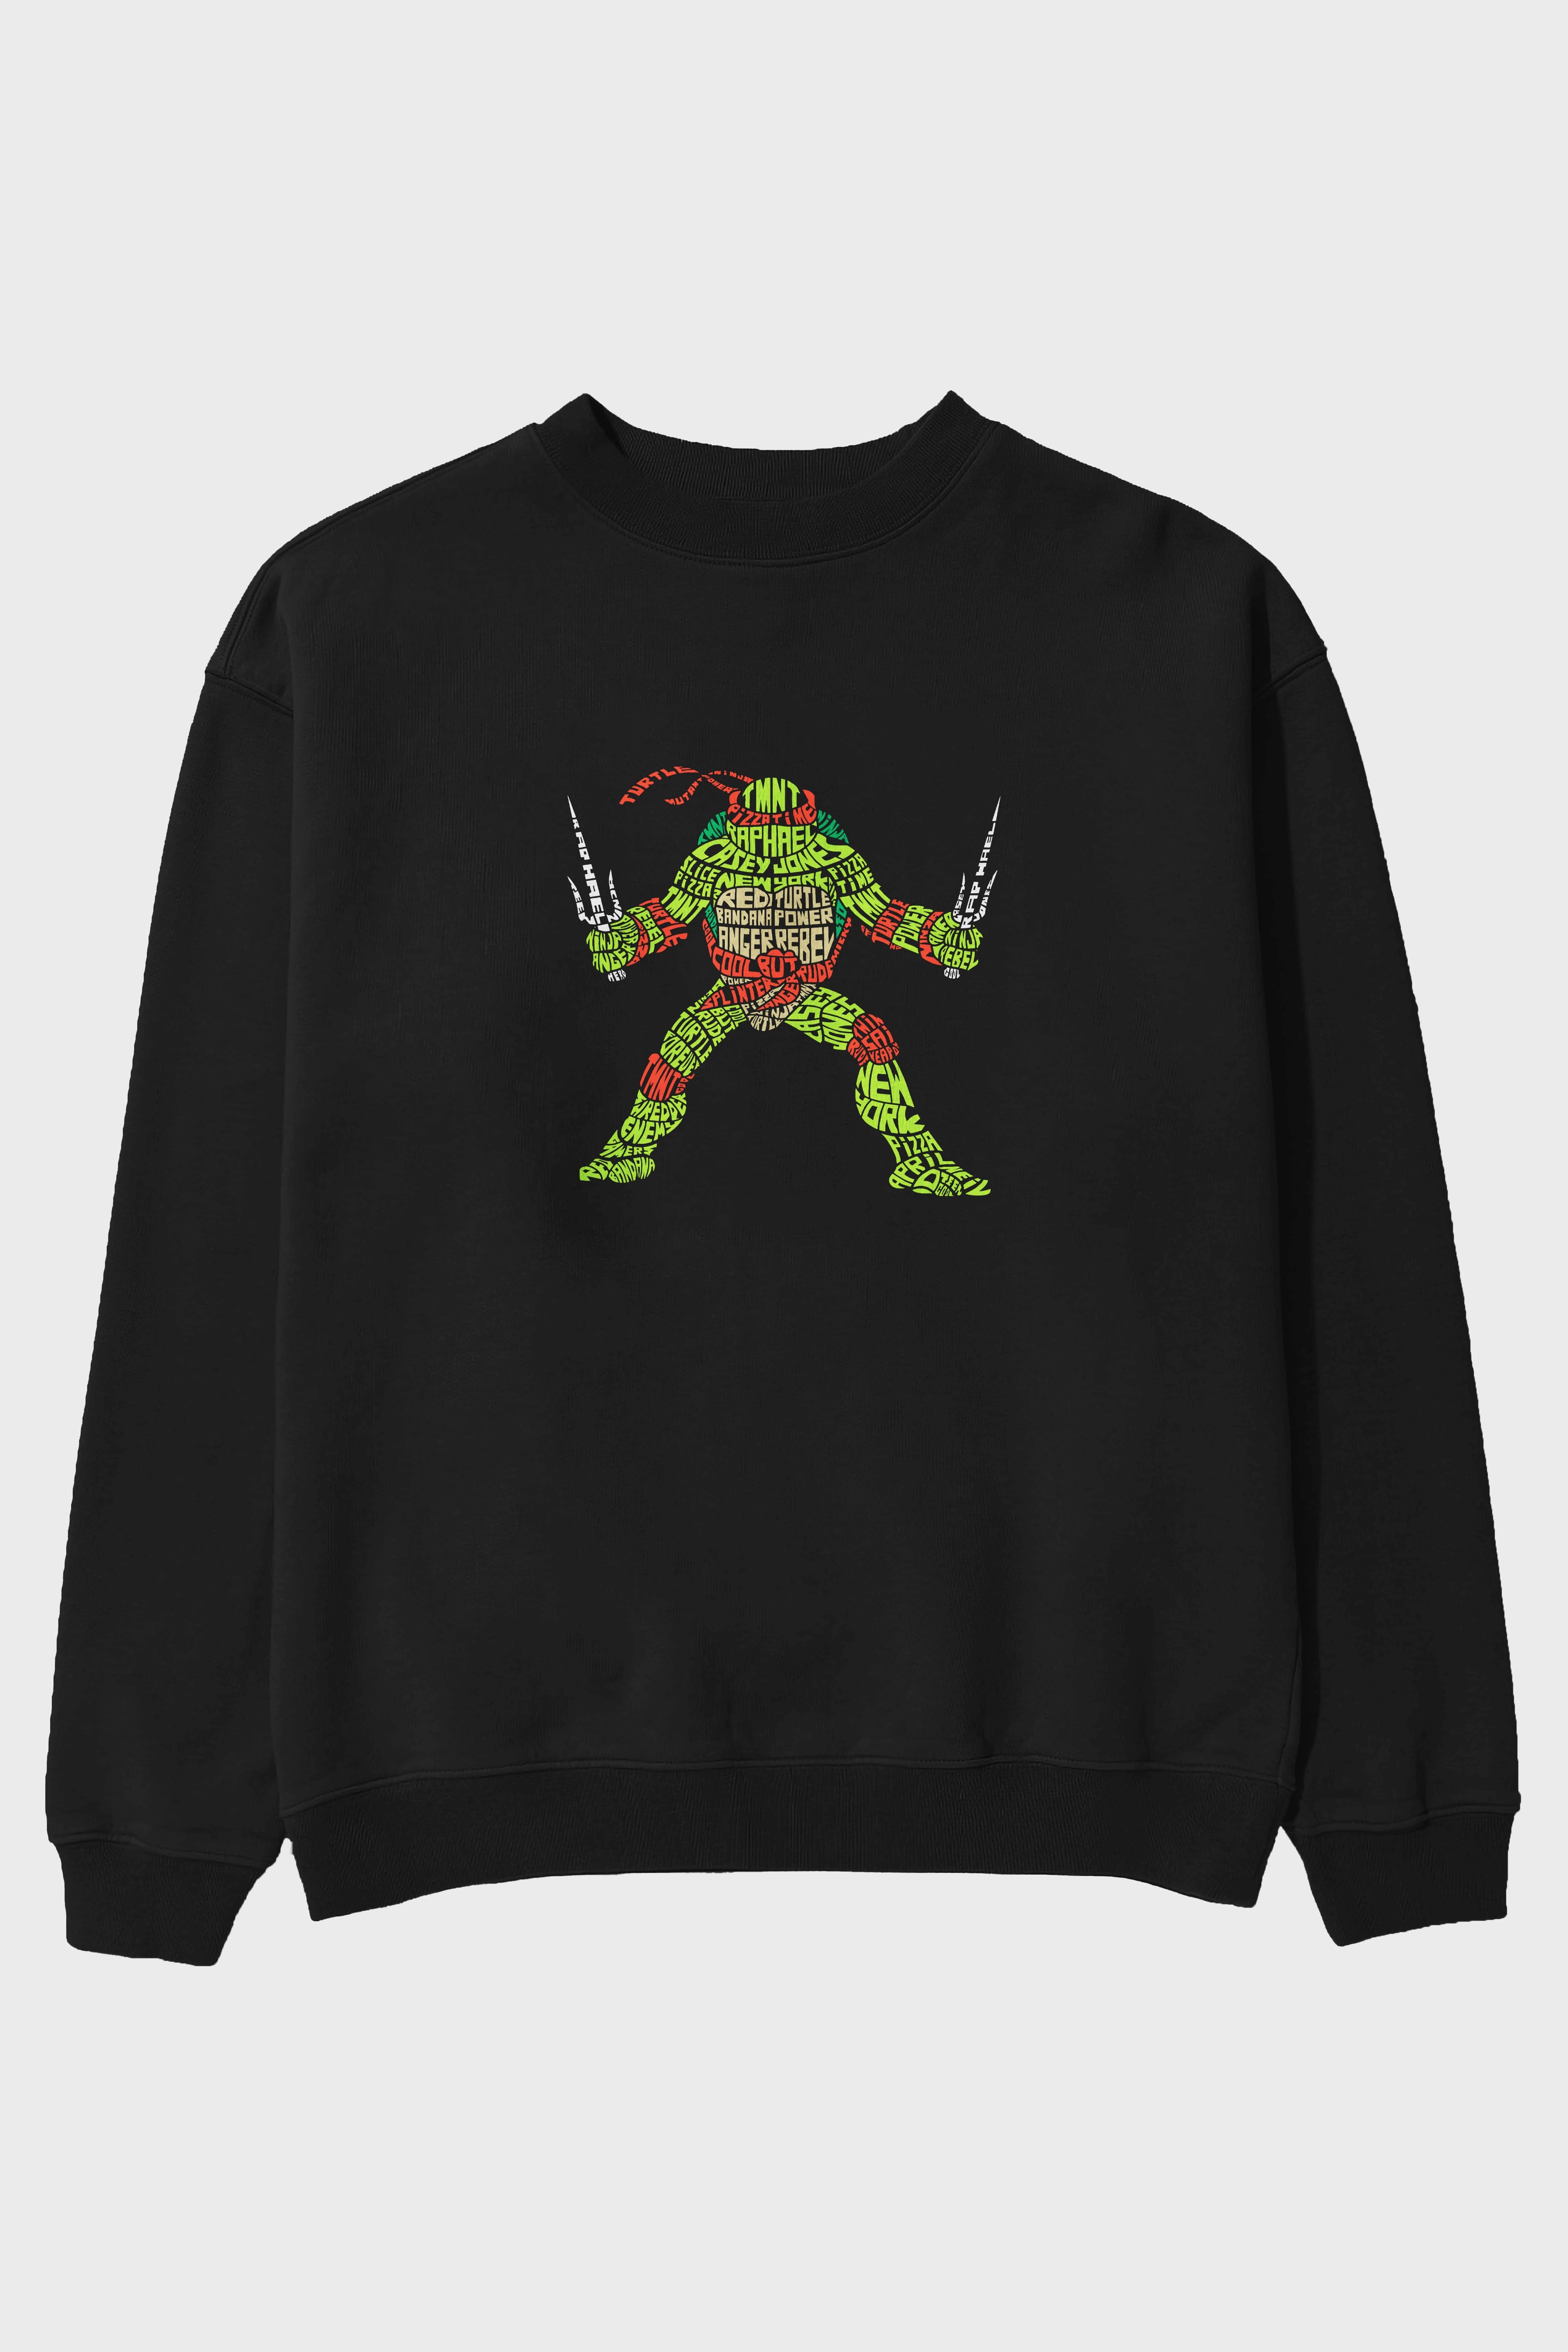 Ninja Turtle Ön Baskılı Oversize Sweatshirt Erkek Kadın Unisex